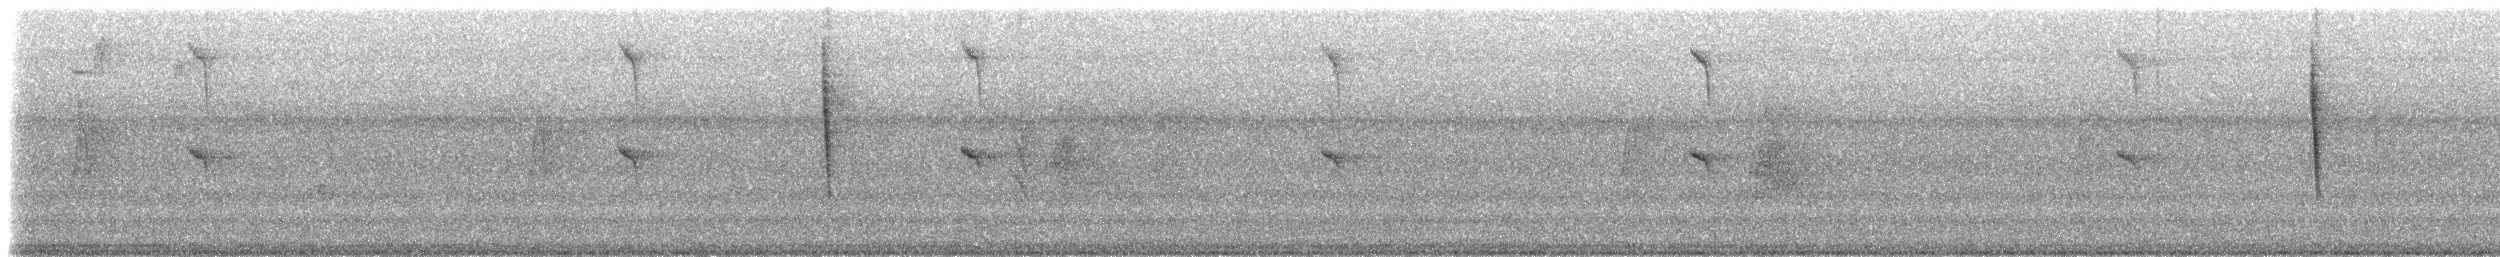 Conirostre oreillard - ML206411871